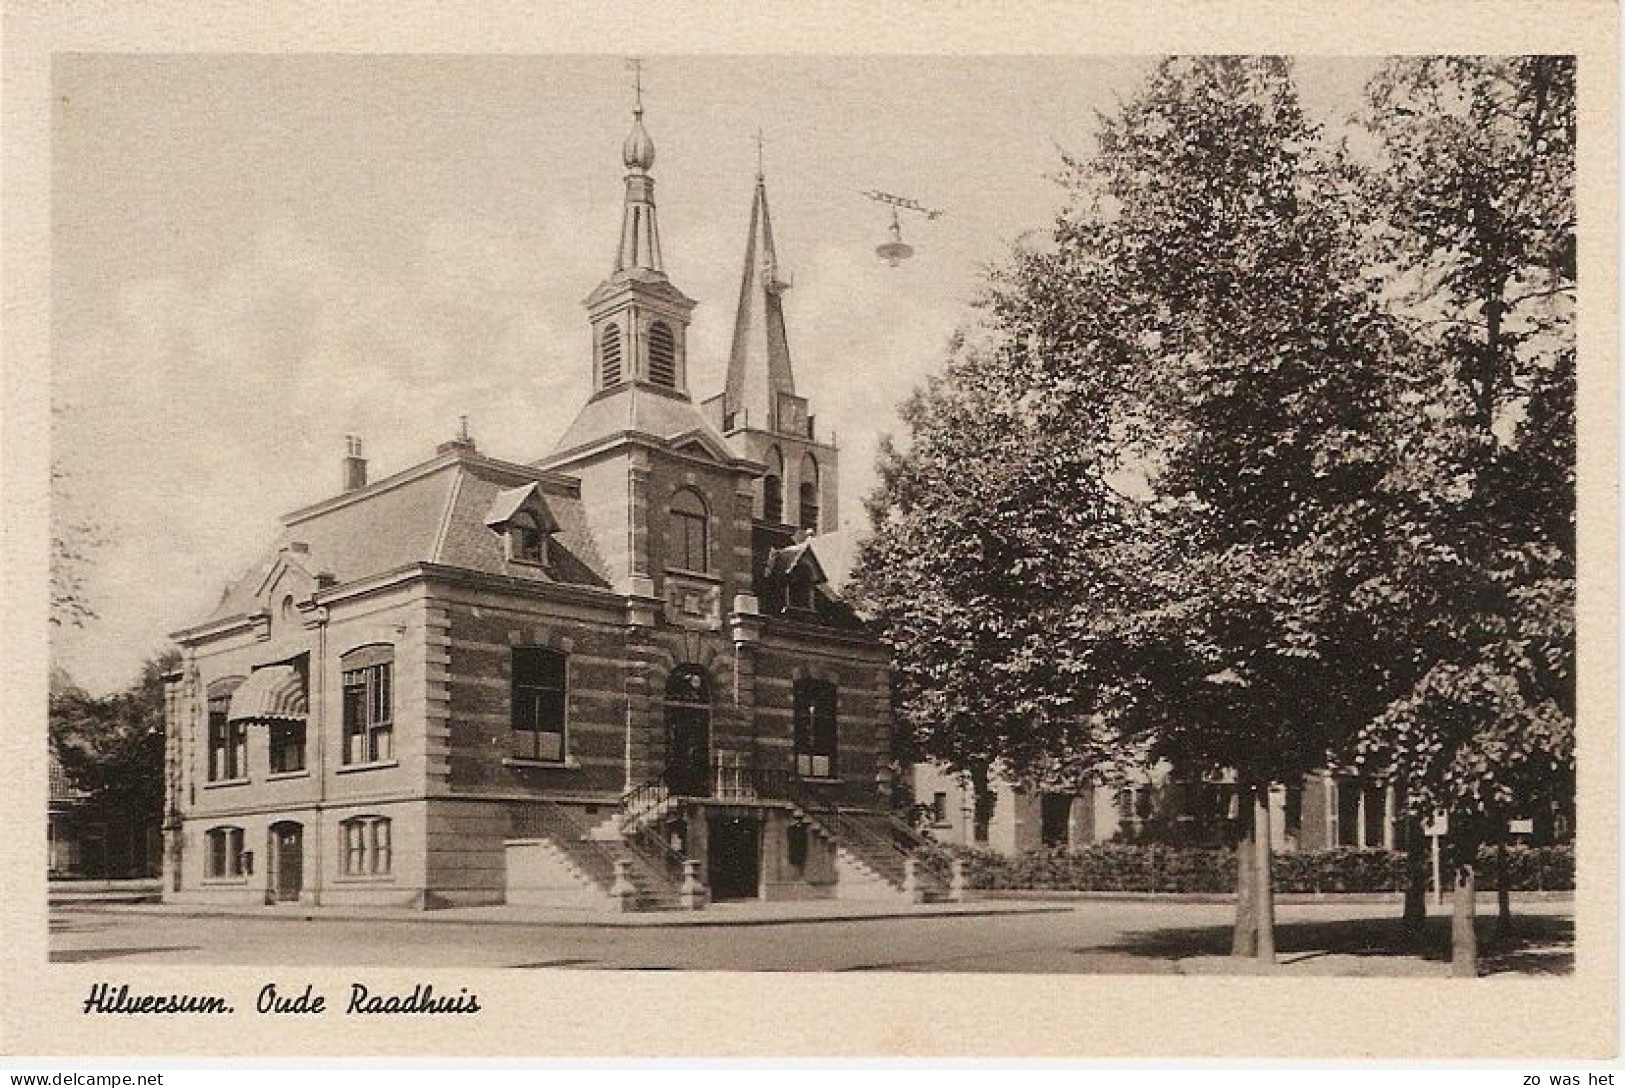 Hilversum, Oude Raadhuis - Hilversum